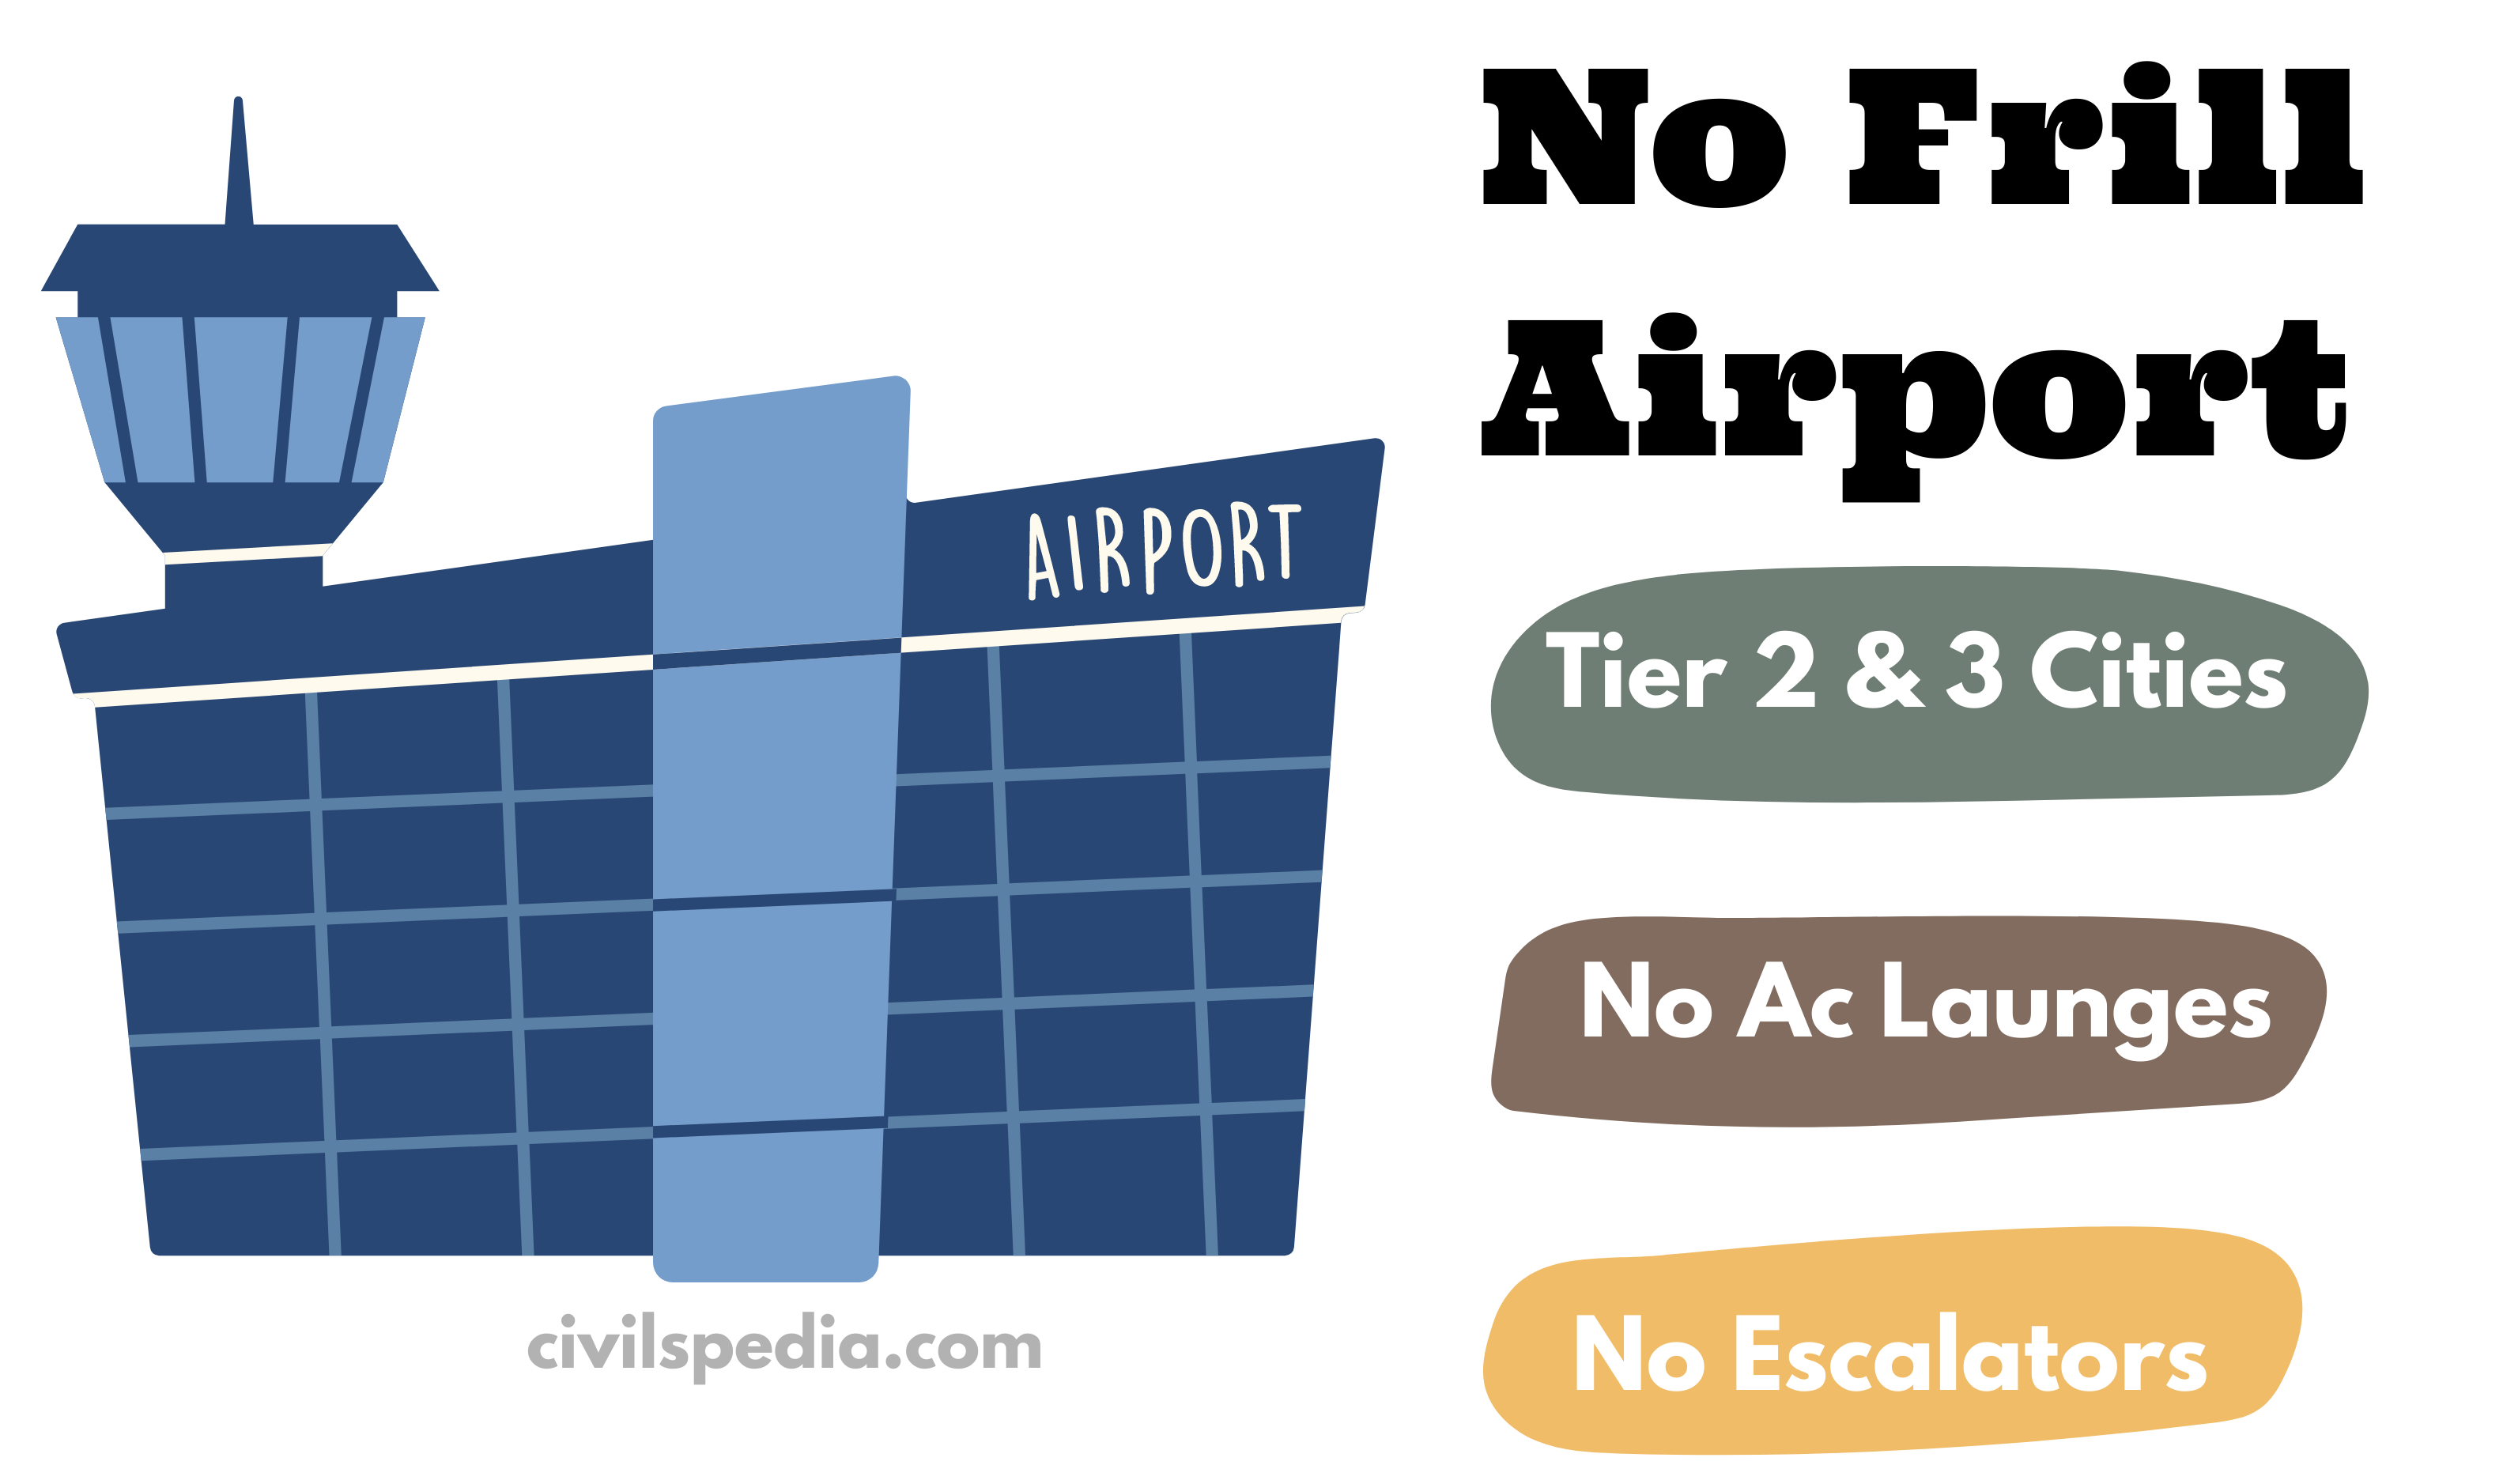 No Frills Airport